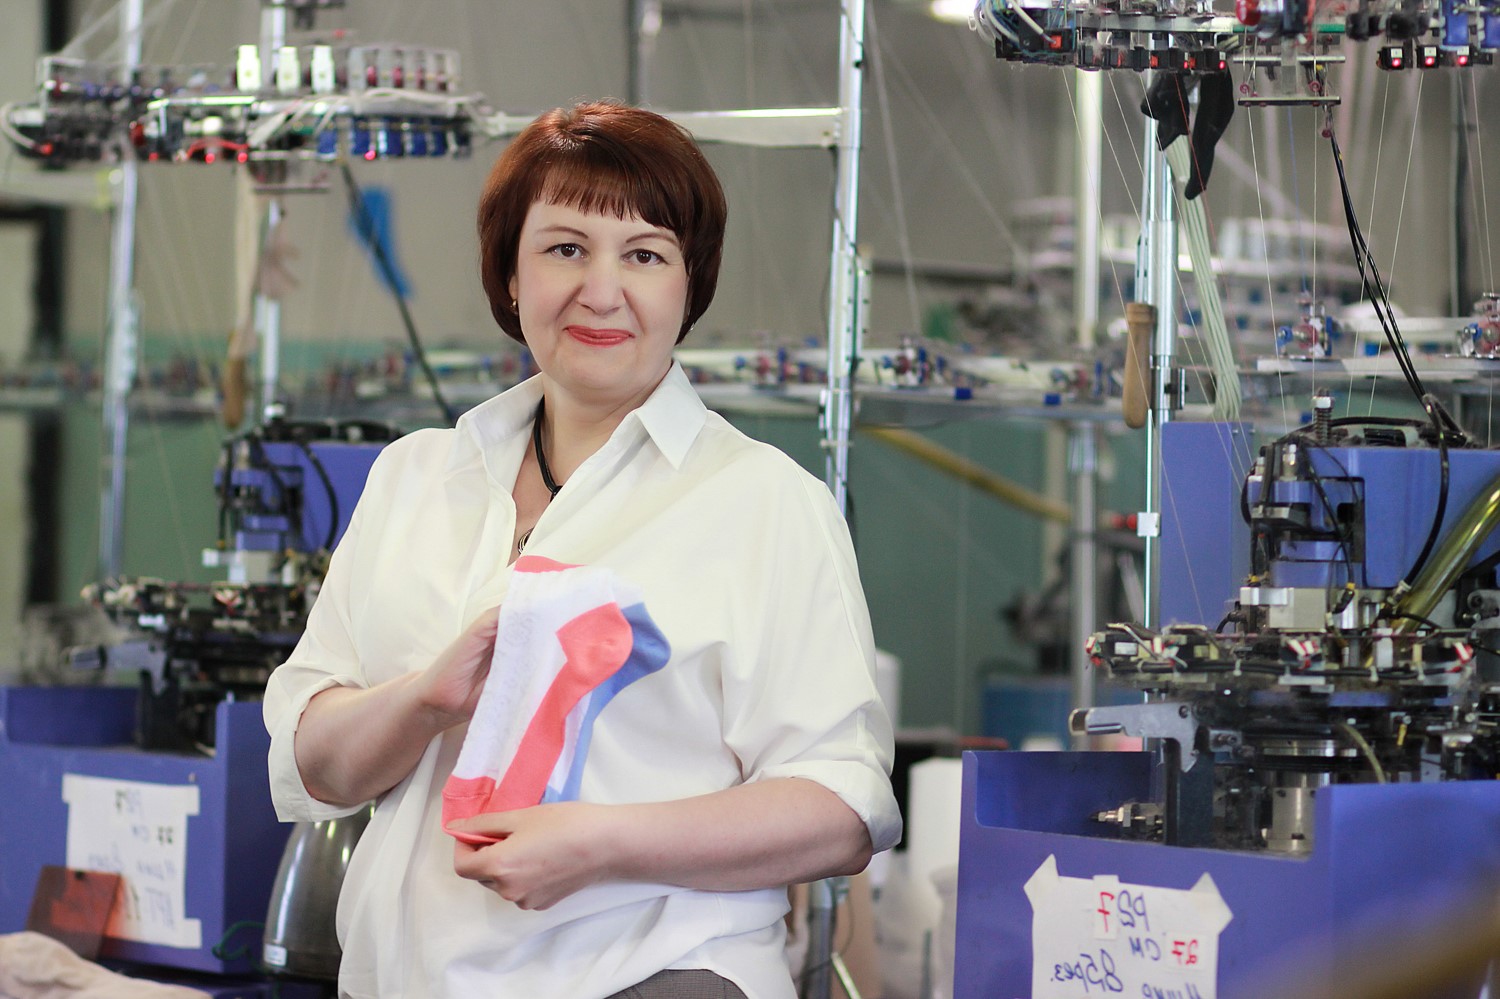  ООО «Владивостокская фабрика «Эвернит» — успешная, широко известная на Дальнем Востоке компания, прочно удерживающая ведущие позиции на рынке производства и продажи носочно-чулочных изделий 